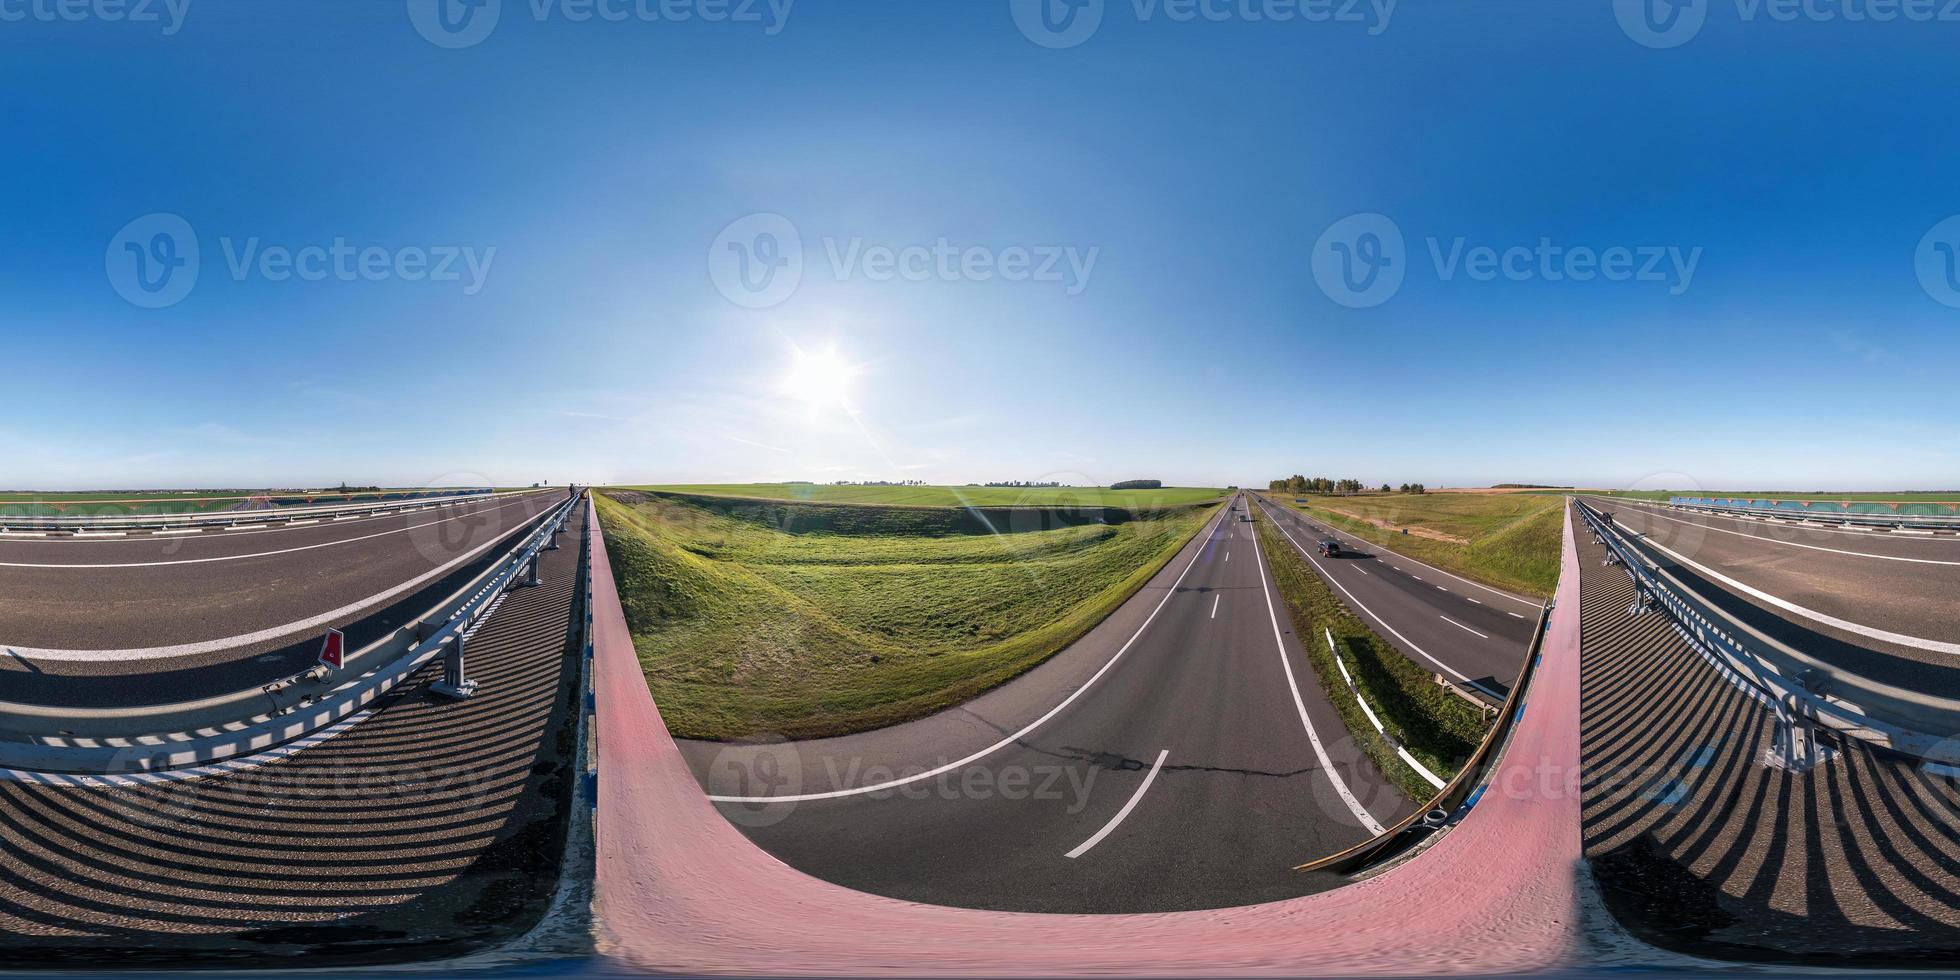 vista panorámica esférica completa de ángulo de 360 grados en el puente del cruce de carreteras de la autopista en proyección equidistante equirectangular, contenido vr ar foto